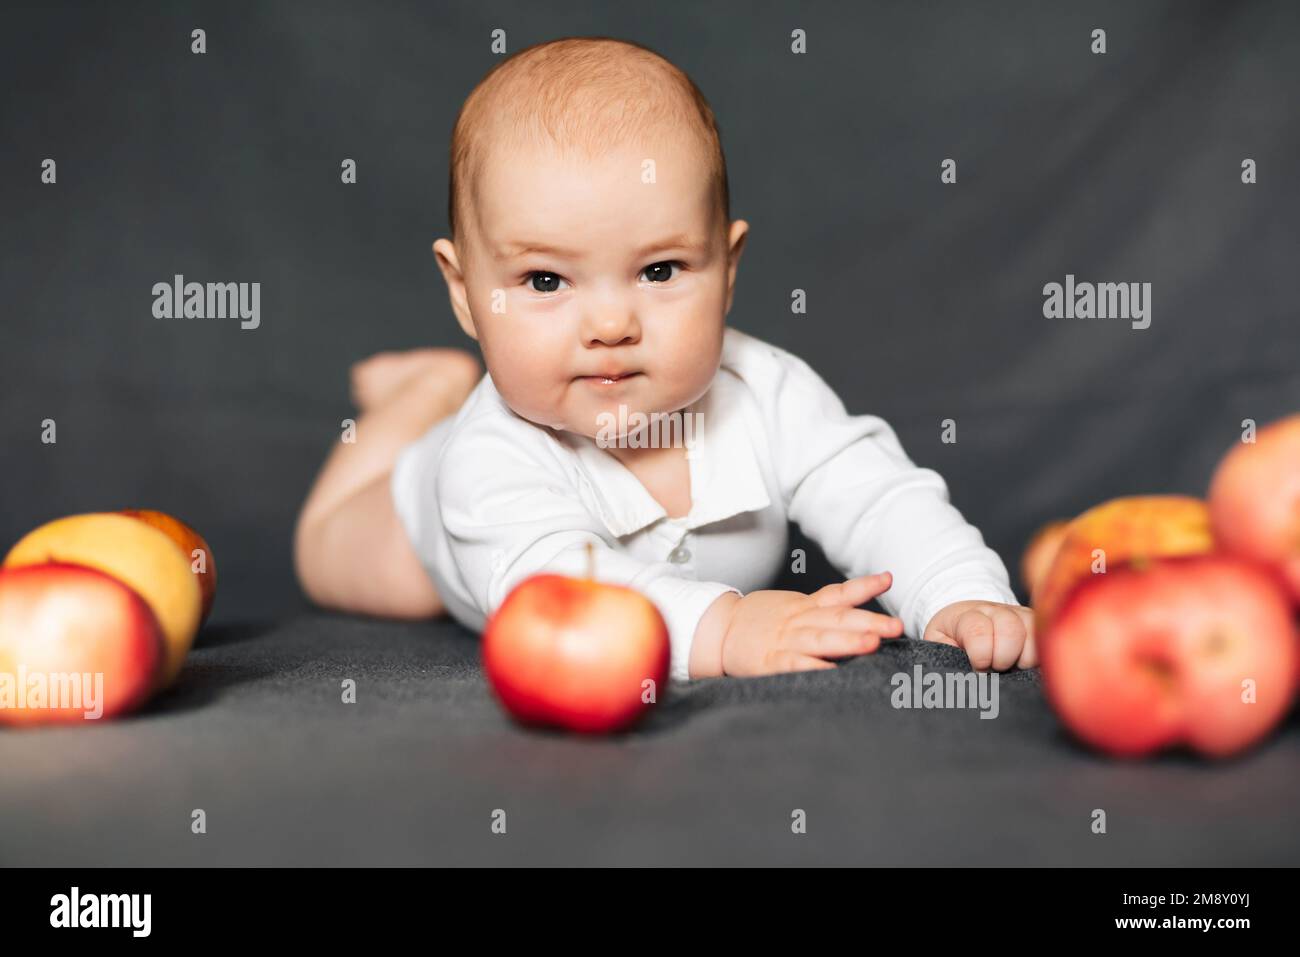 Neonato sdraiato con le mele. Bambino caucasico in un bodysuit bianco. Concetto di infanzia autunnale Foto Stock